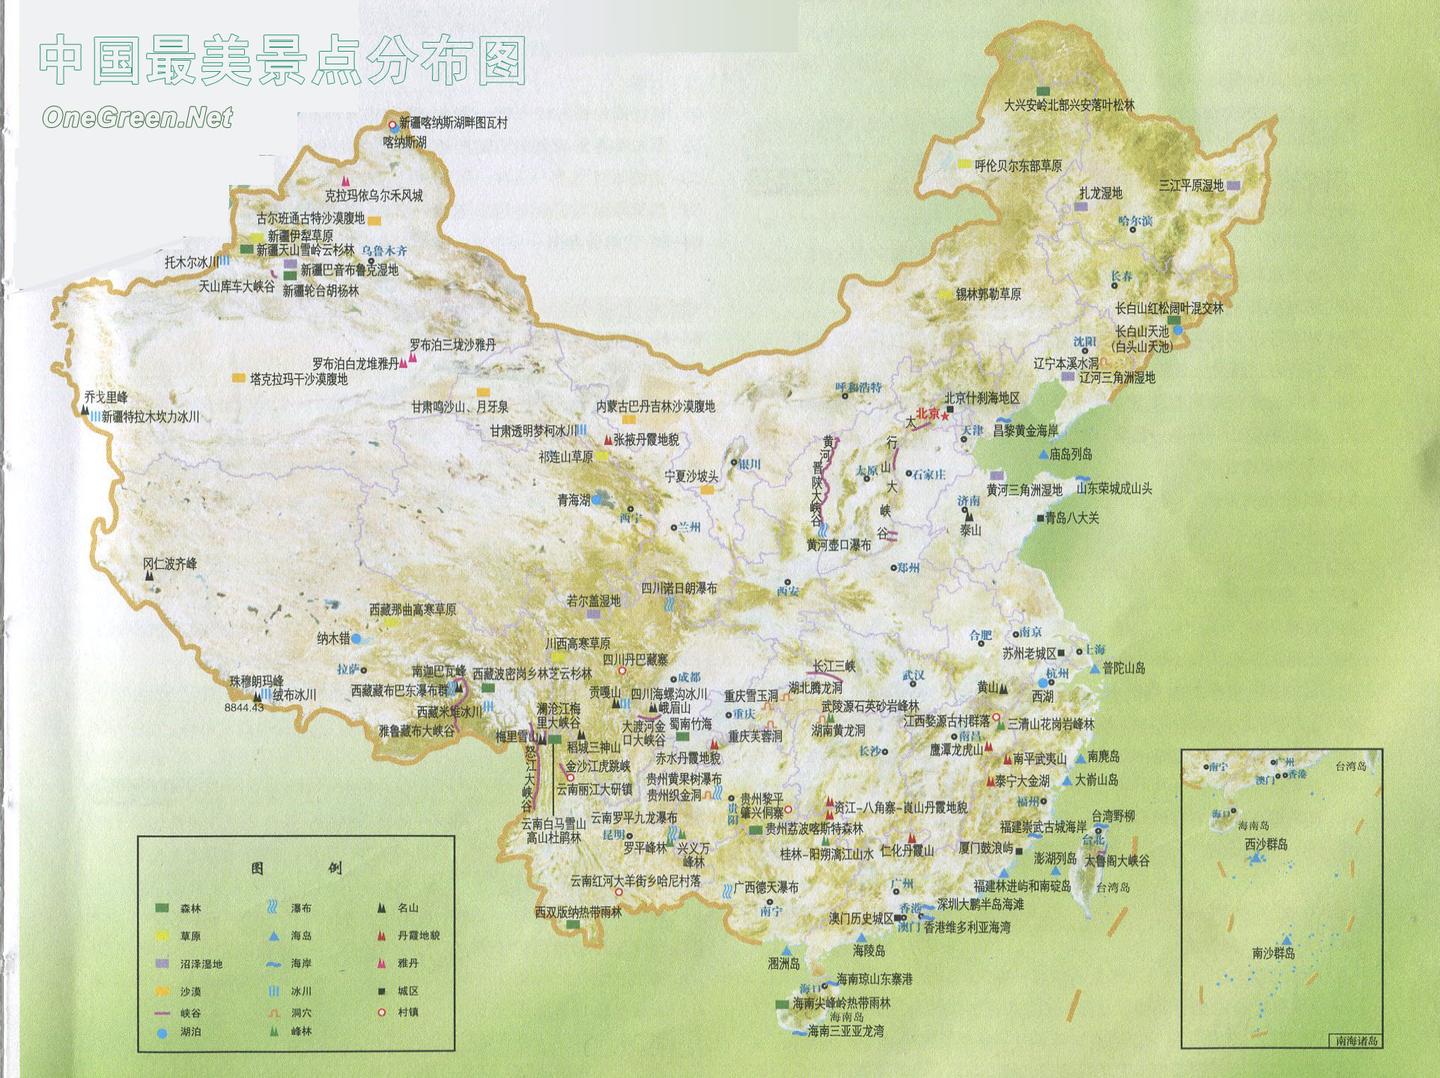 中国最美旅游景点高清地图(汇聚3000多个景点,可下载收藏)